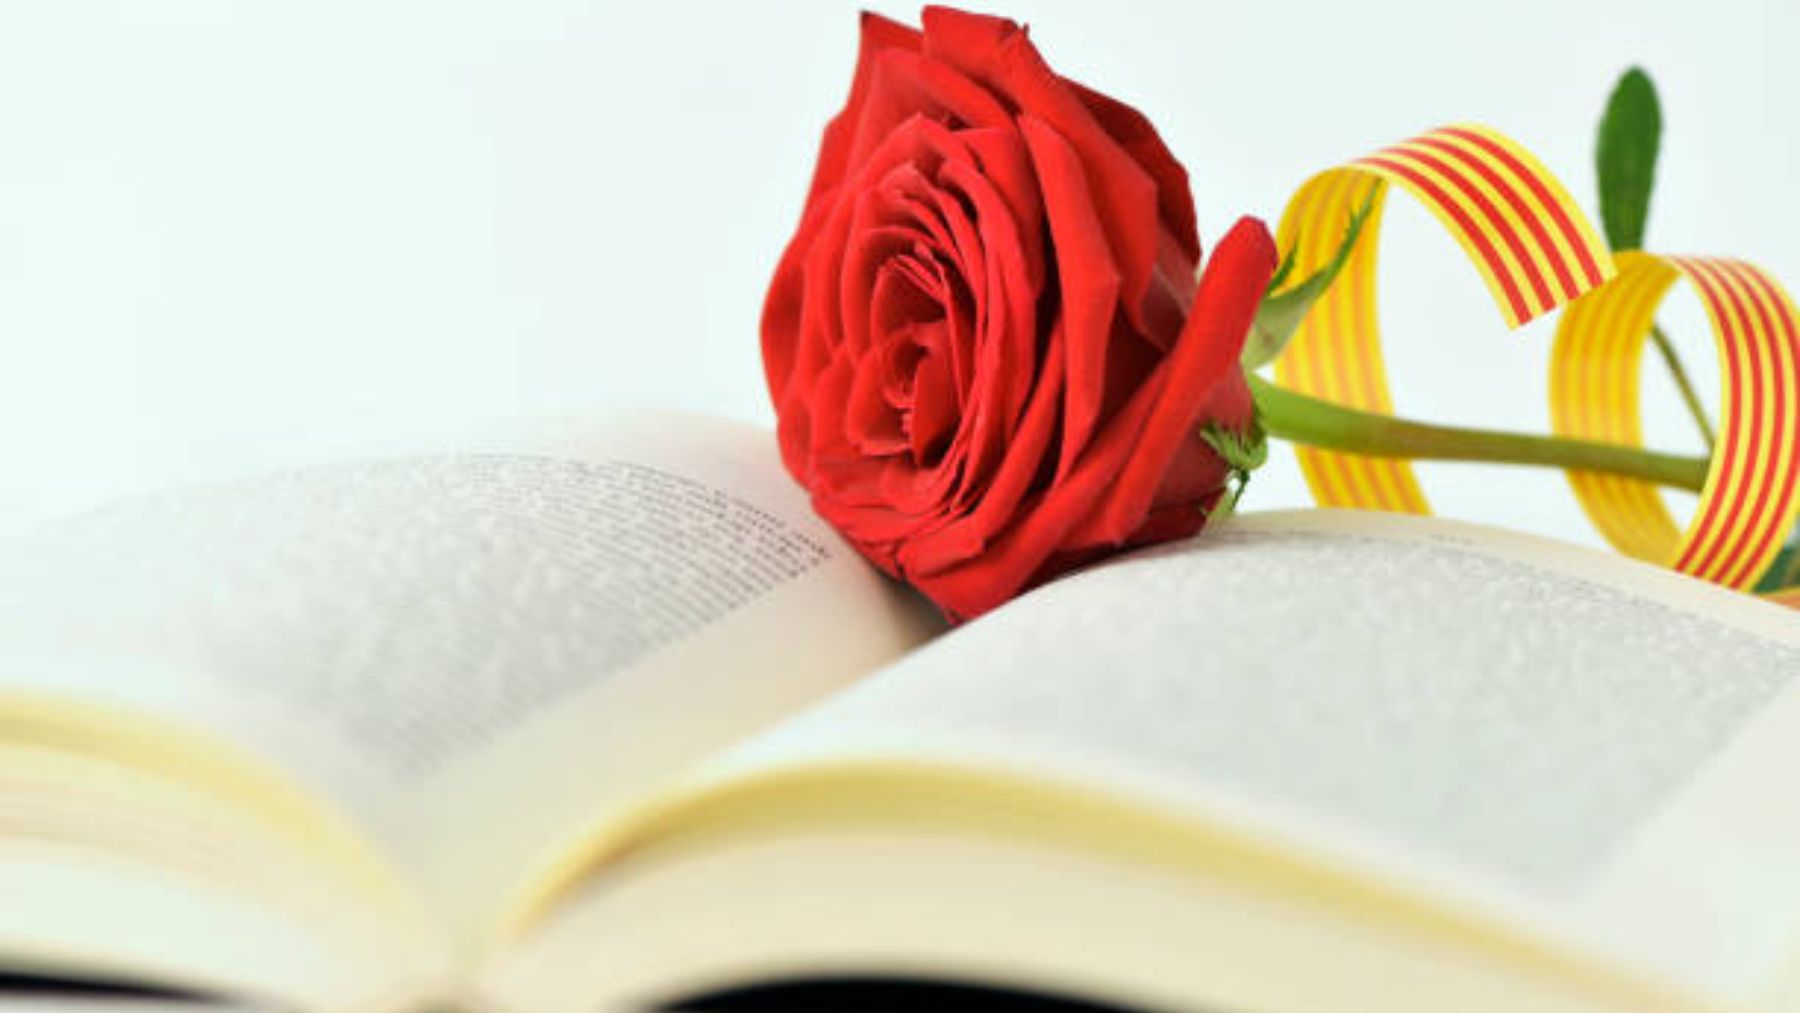 La rosa de Sant Jordi y libro.